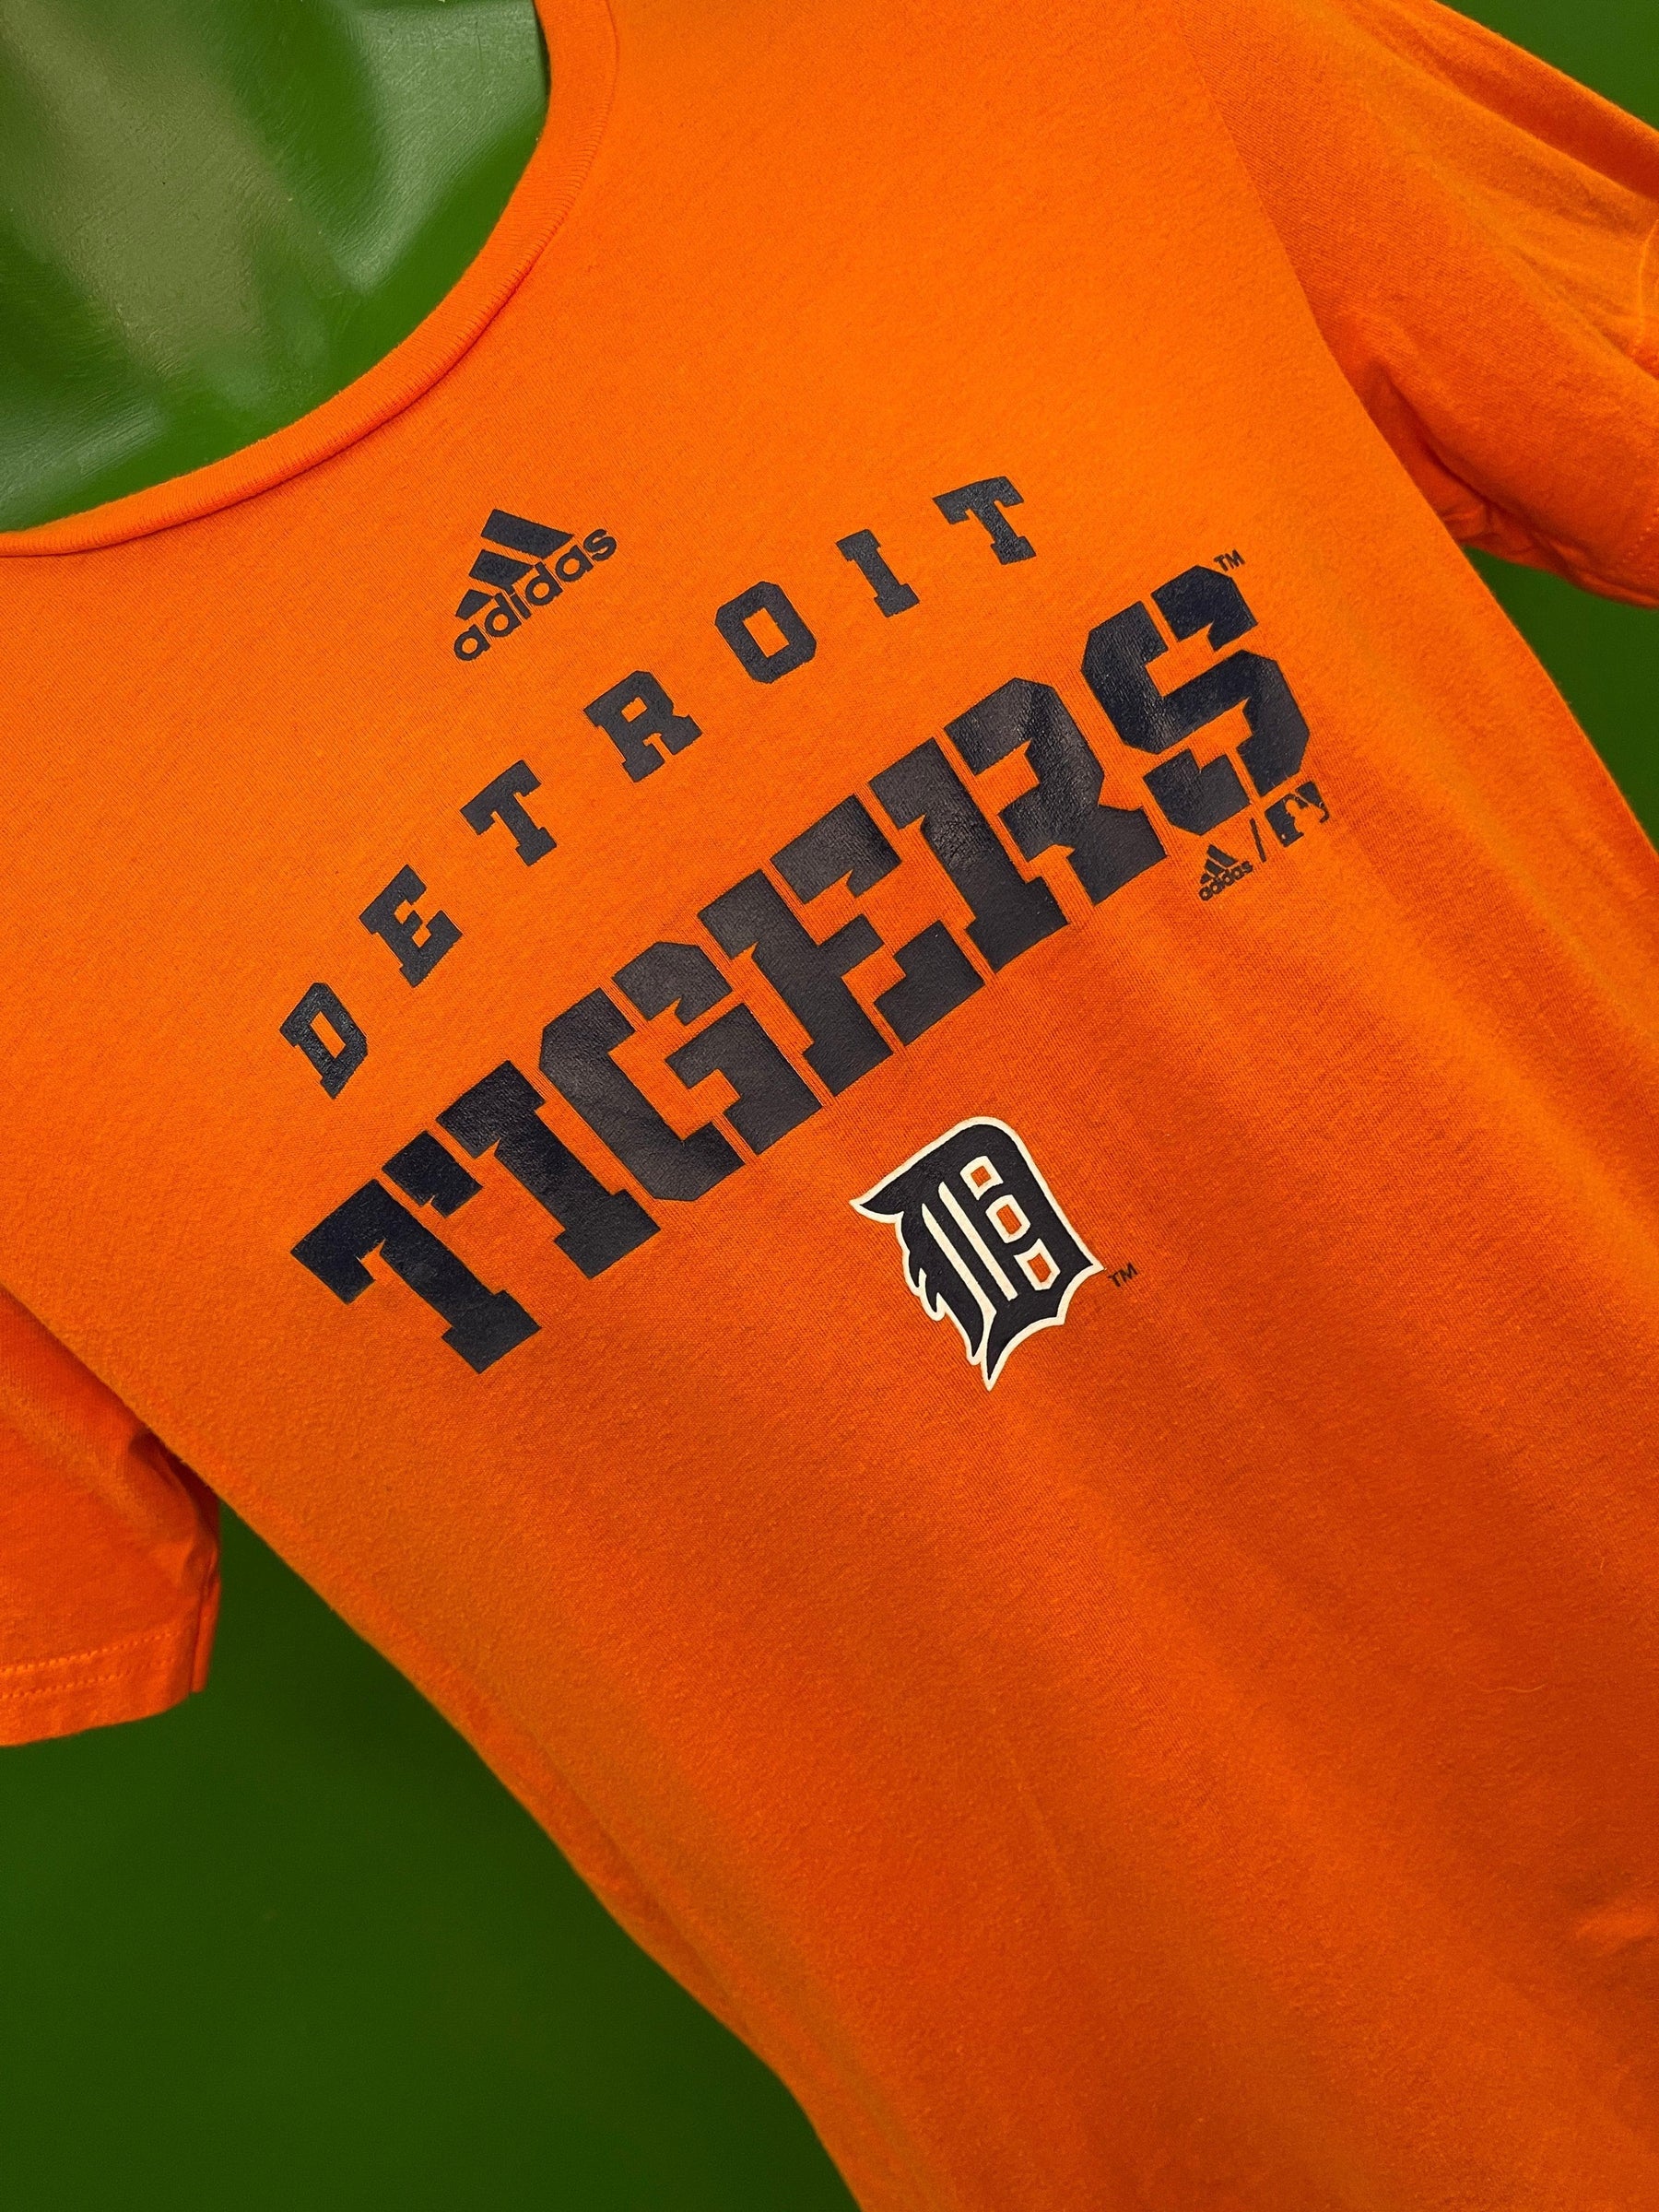 MLB Detroit Tigers Adidas Orange T-Shirt Youth Large 14-16